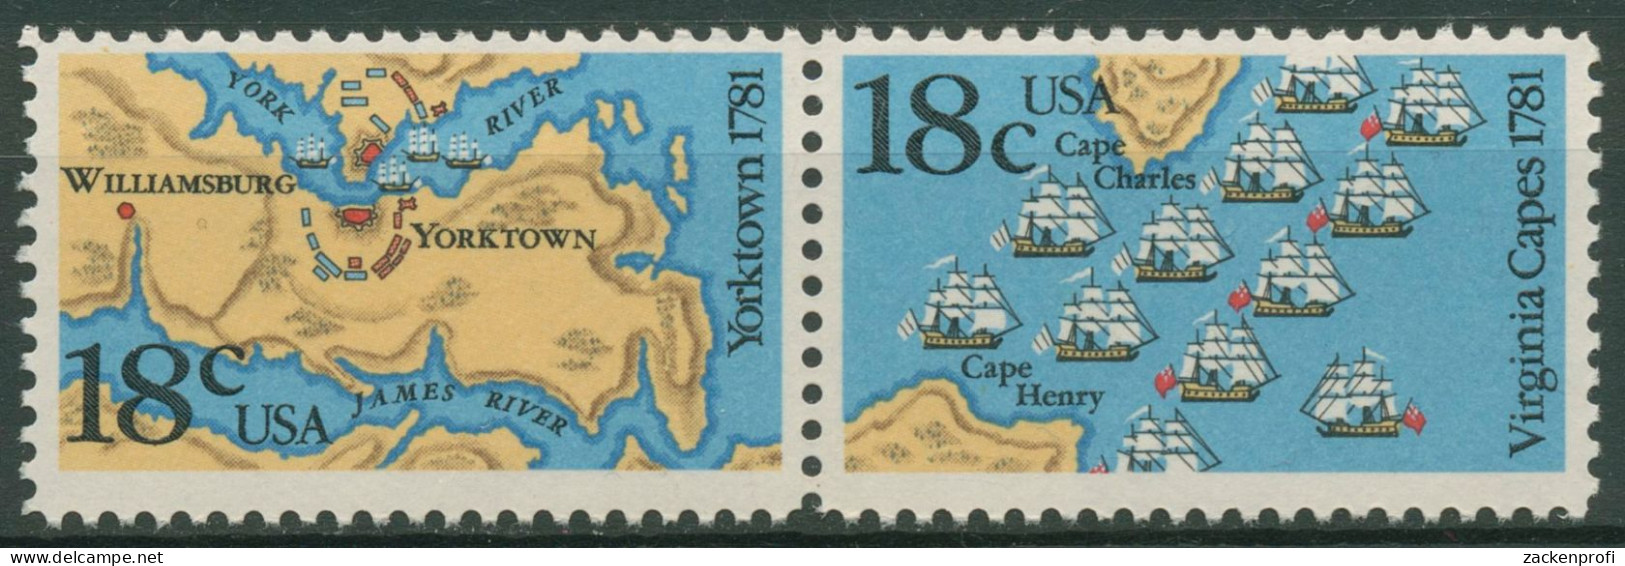 USA 1981 Seeschlacht Chesapeake Bay & Yorktown 1511/12 ZD Postfrisch - Neufs